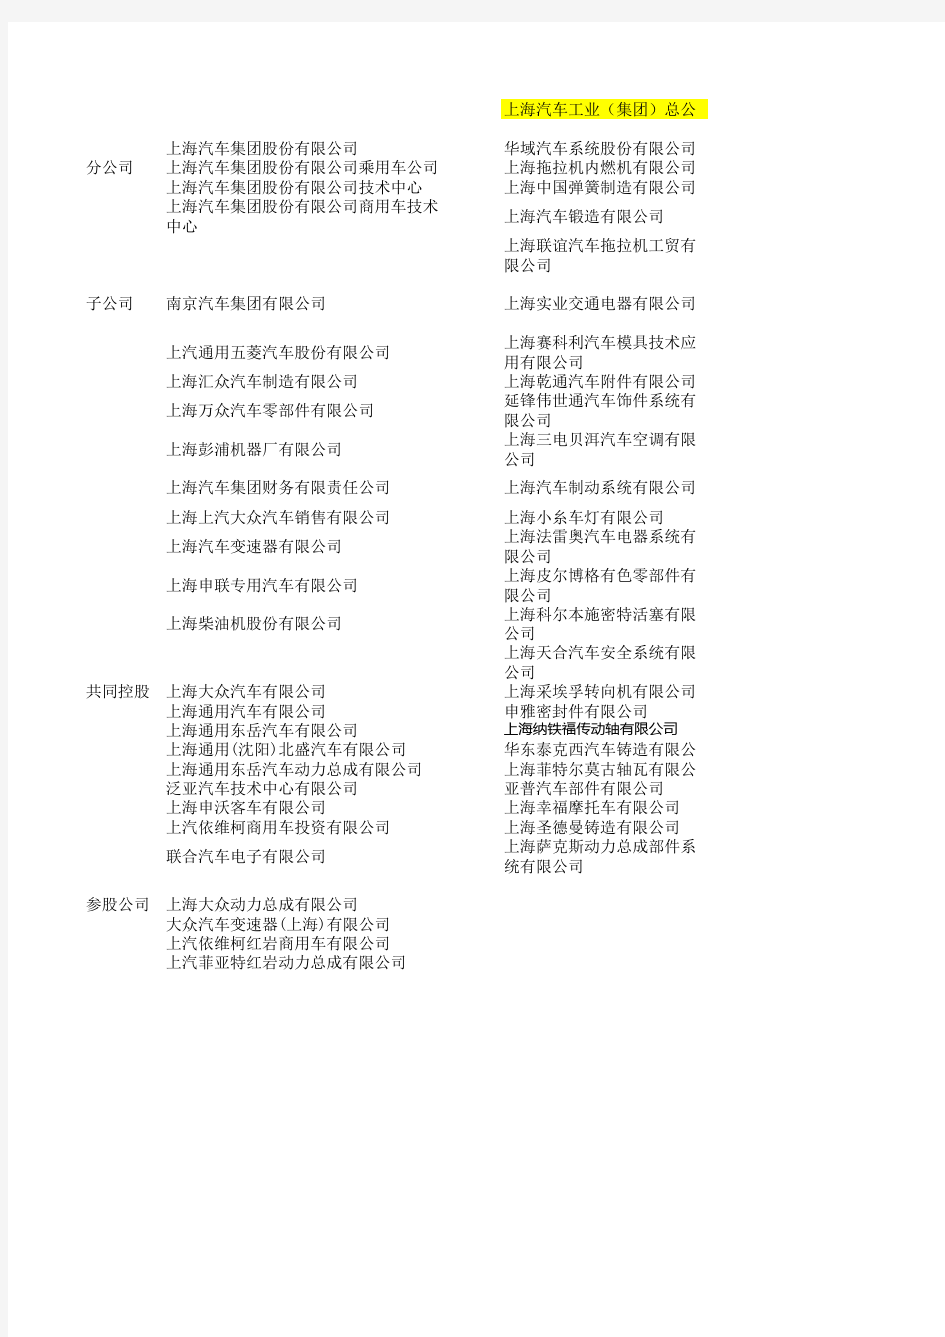 上海汽车集团组织架构表